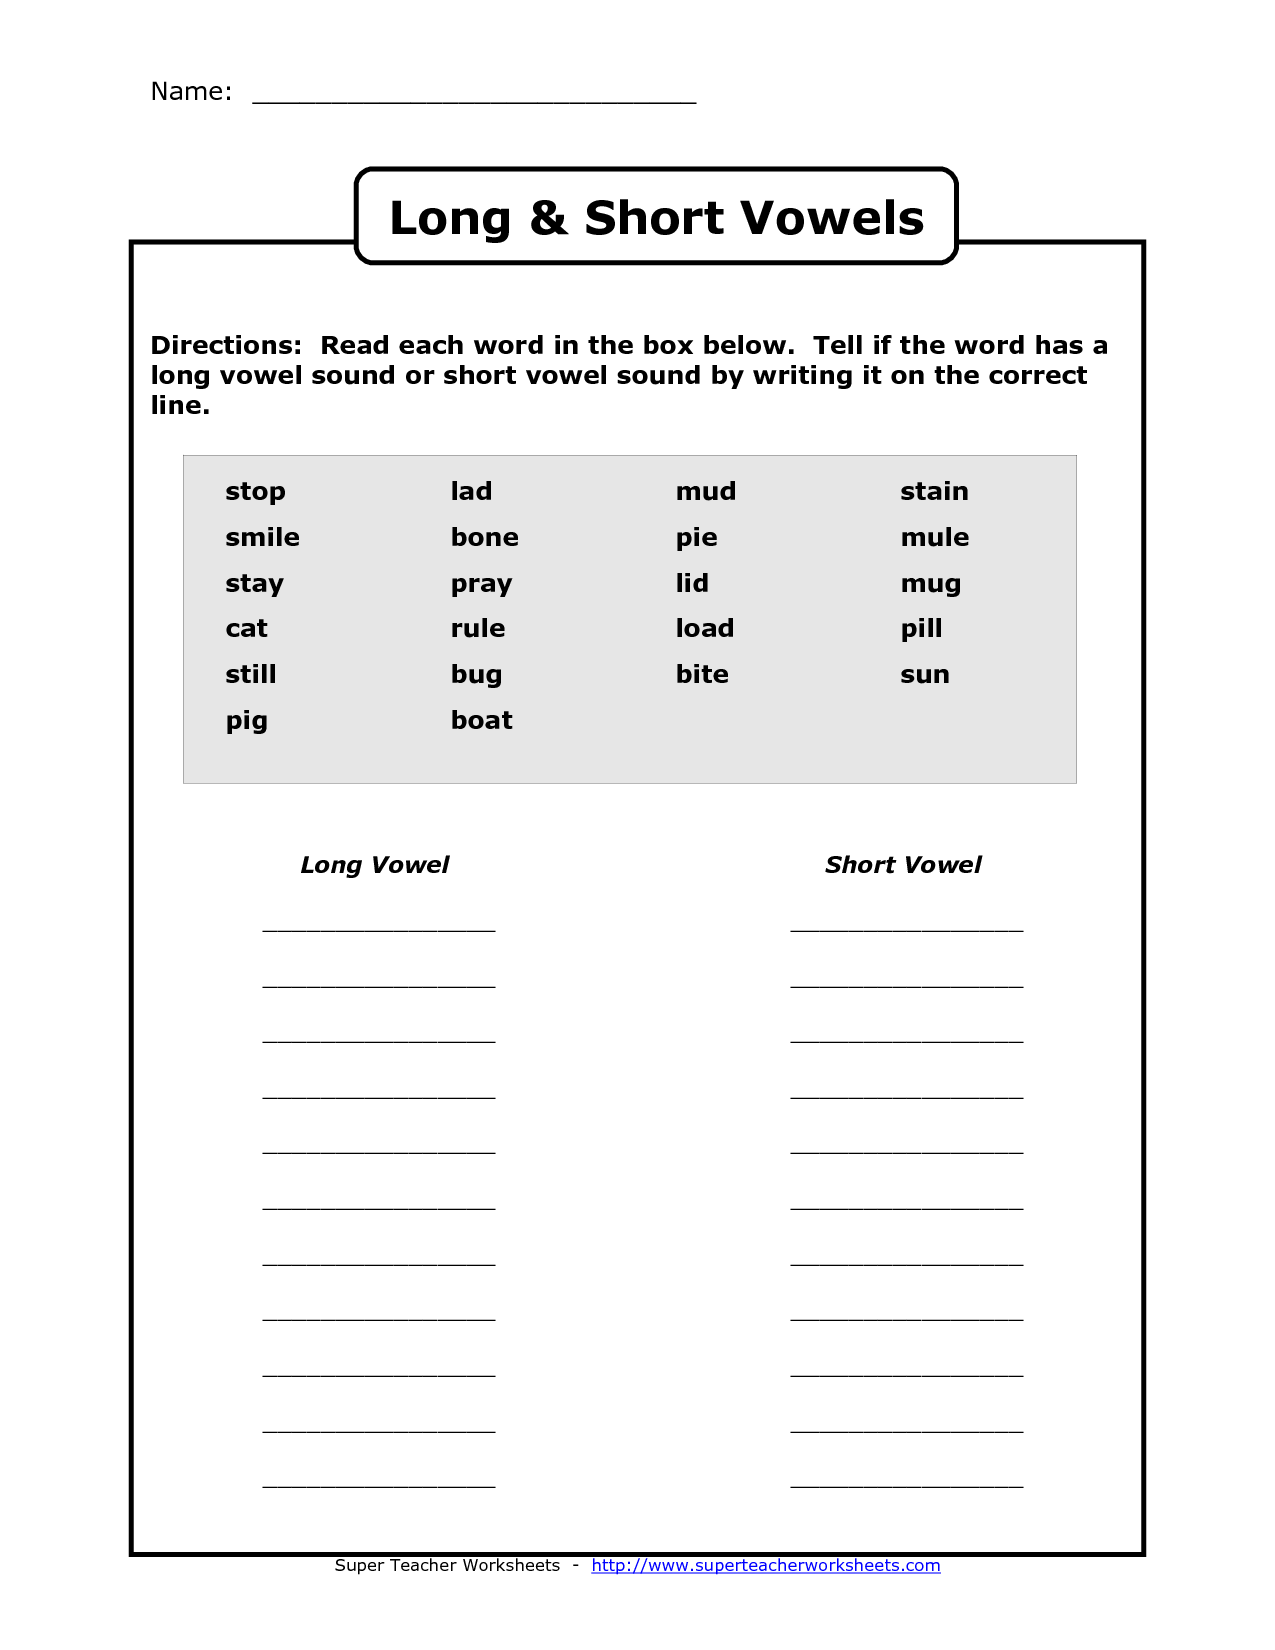 Long and Short Vowel Sounds Worksheet Image